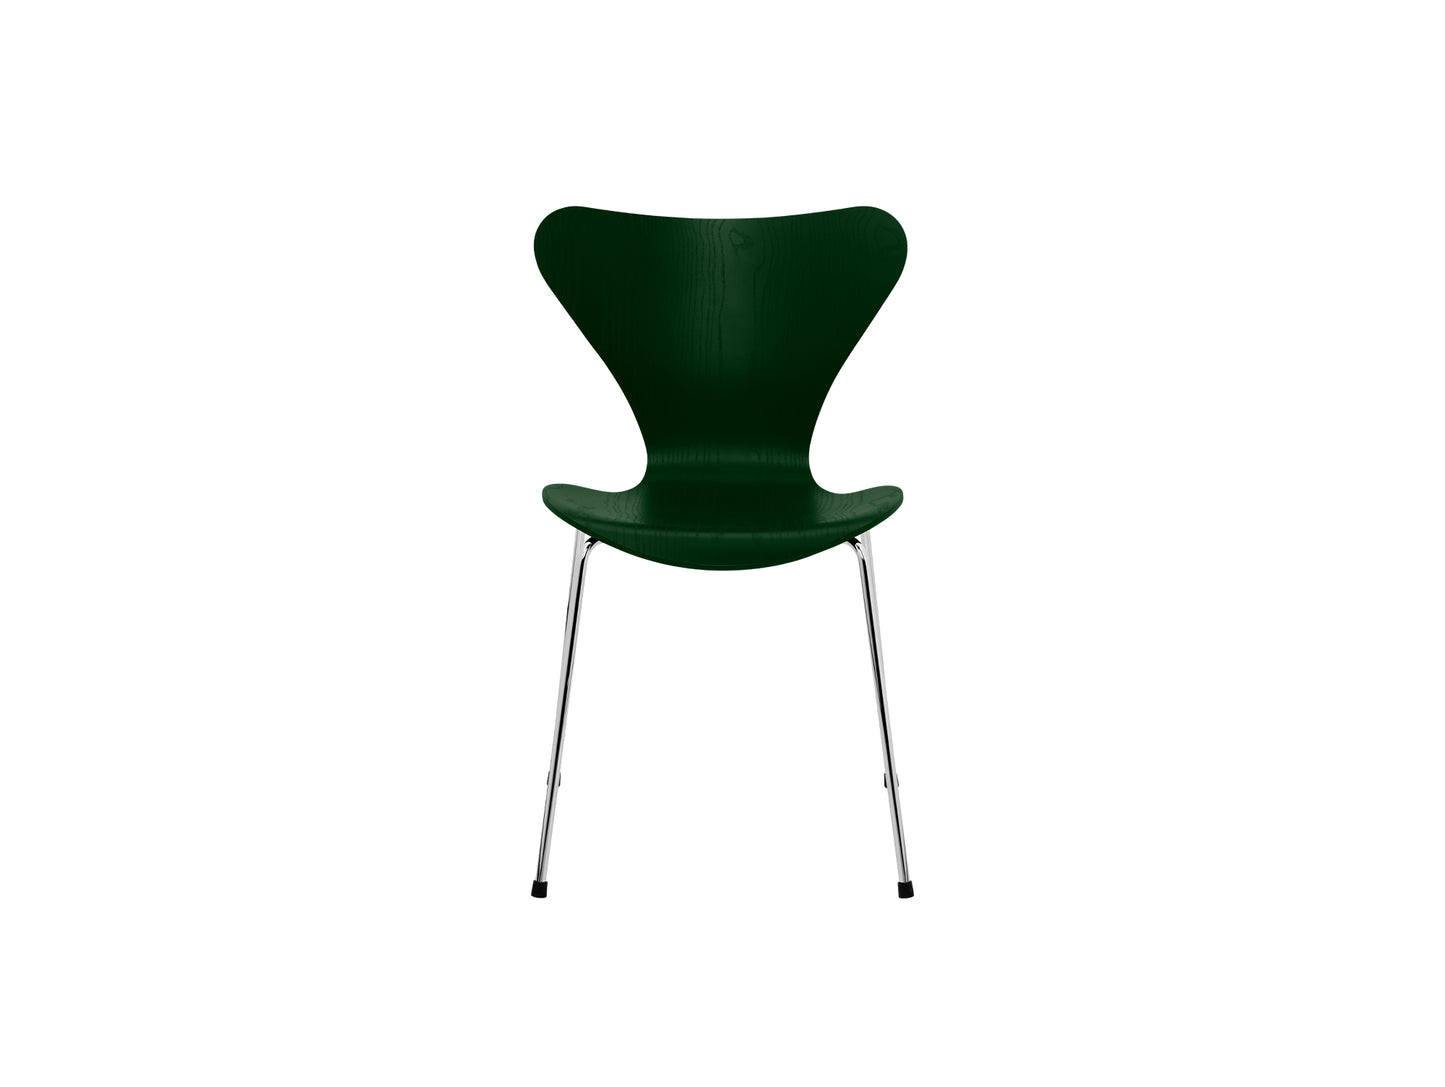 Series 7™ 3107 Dining Chair by Fritz Hansen - Evergreen Coloured Ash Veneer Shell / Chromed Steel